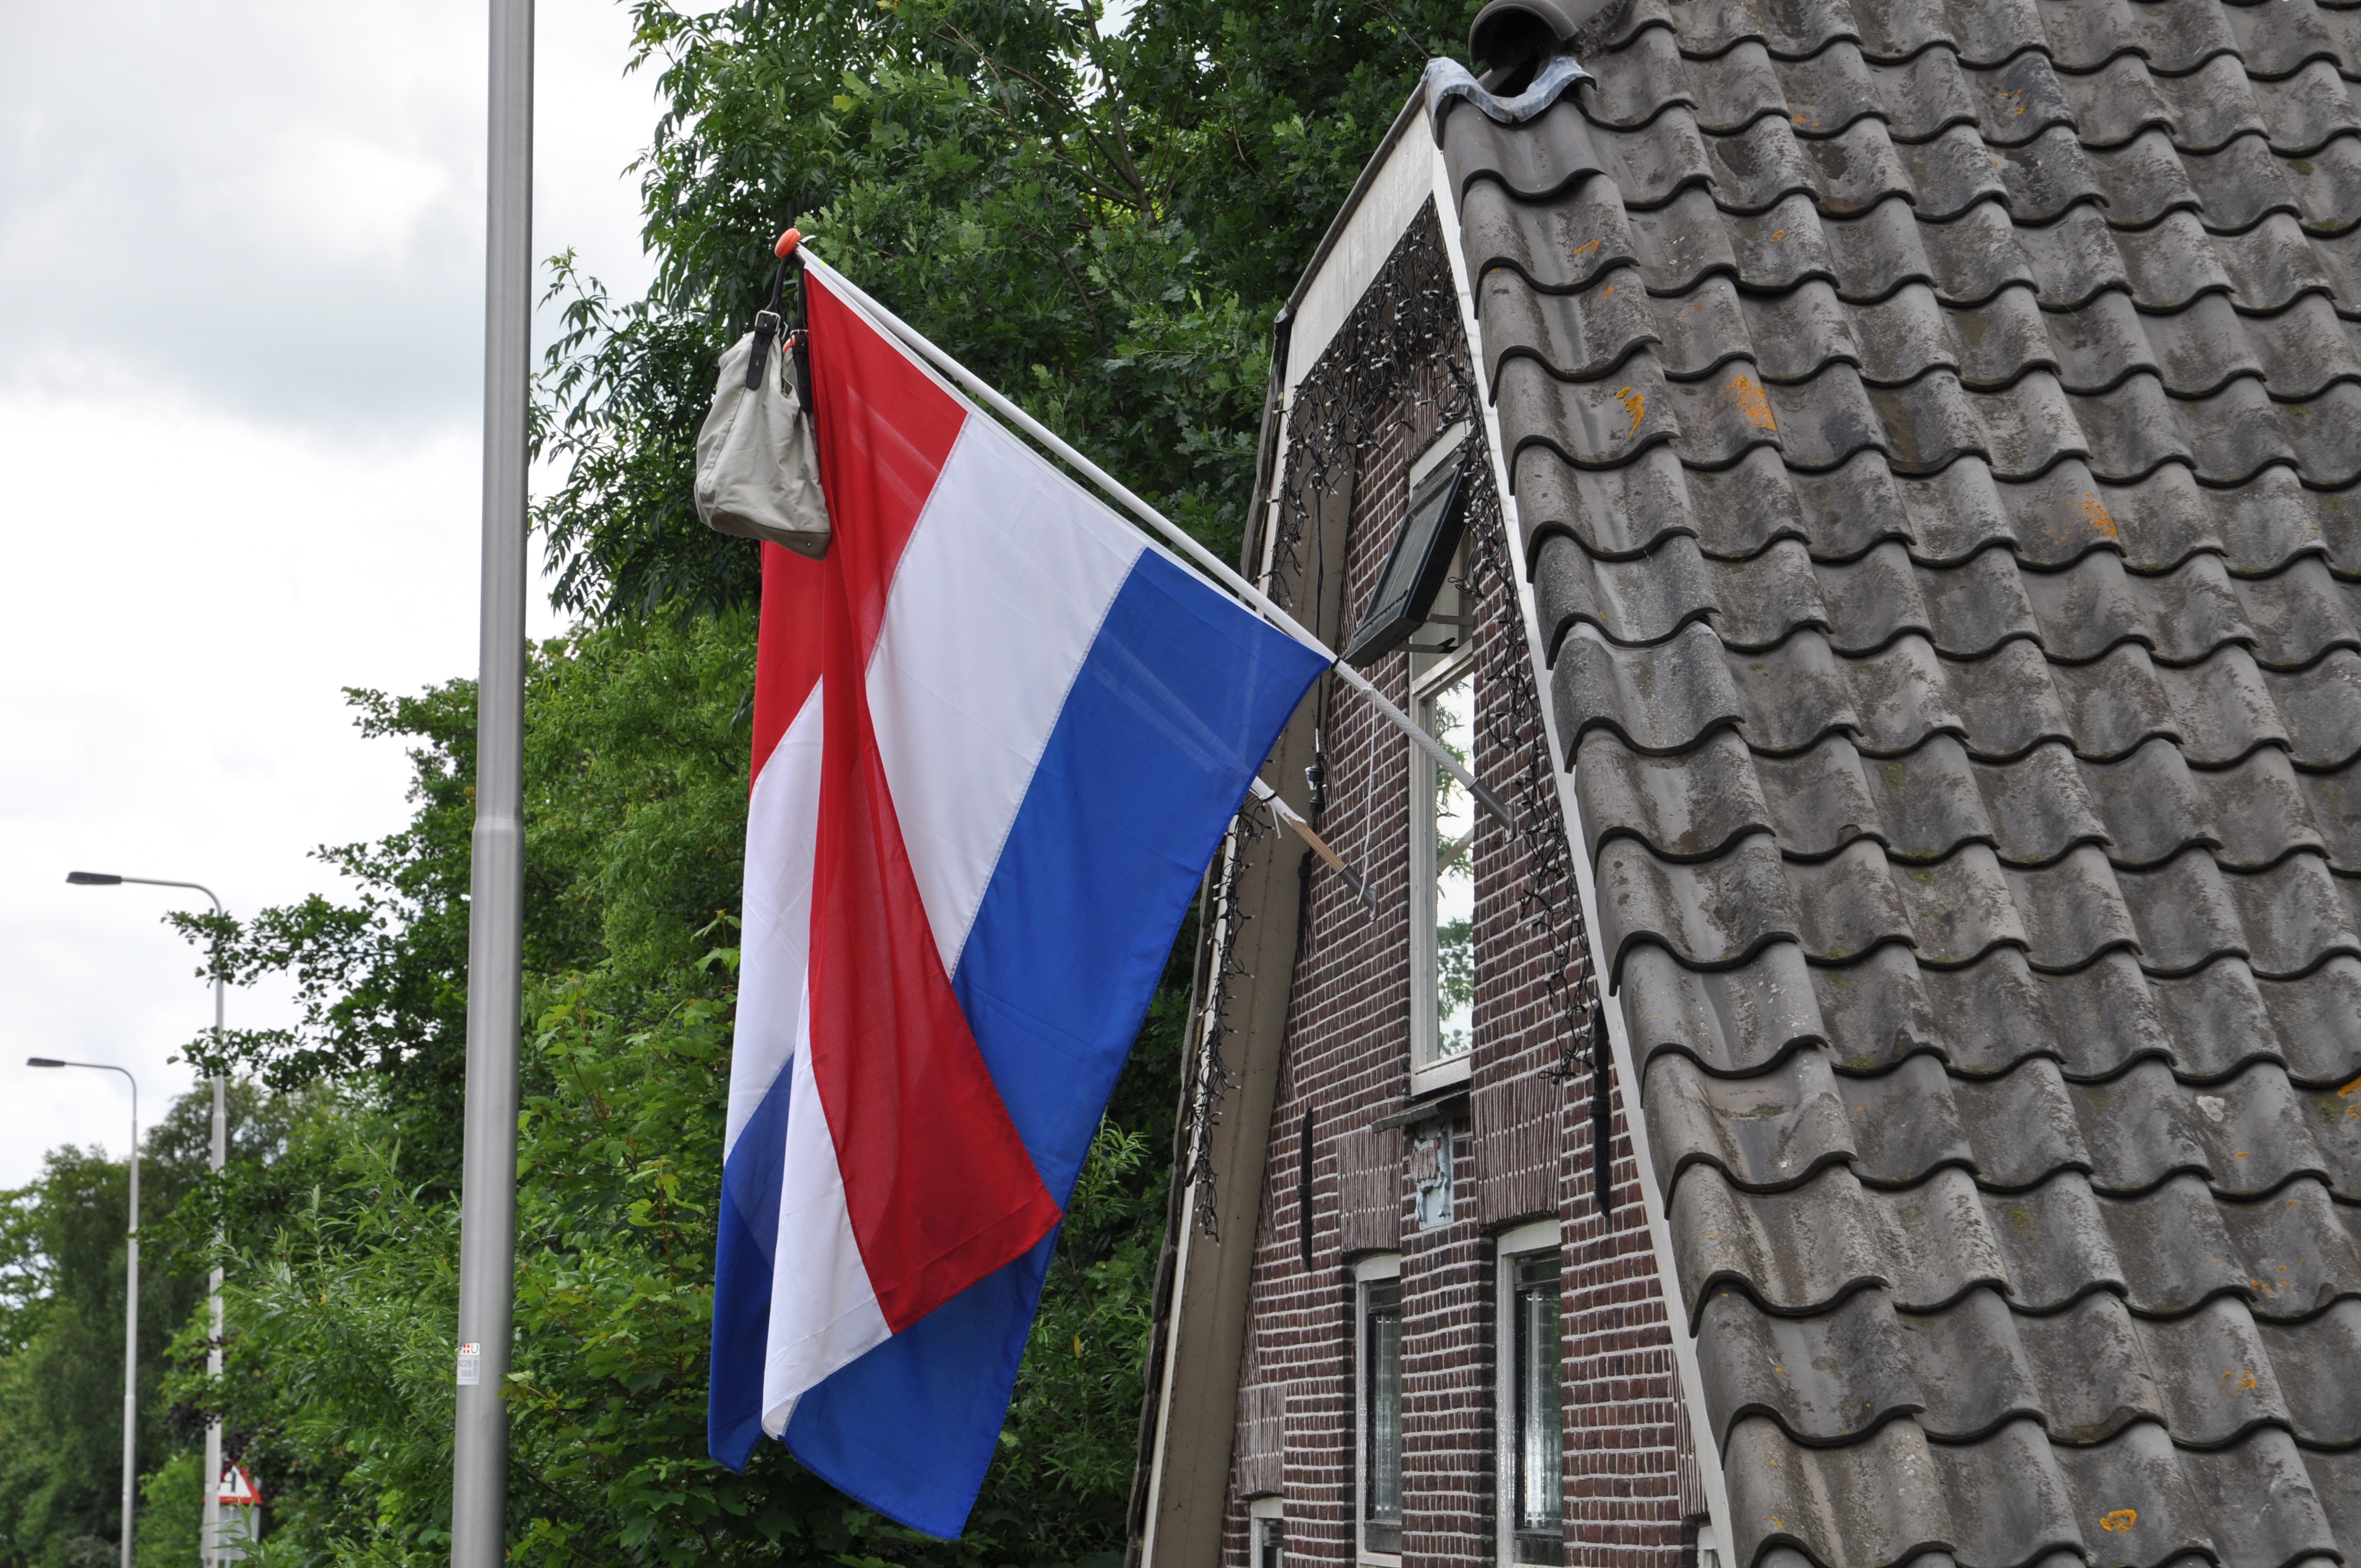 vlag met tas.JPG - Wikimedia Commons